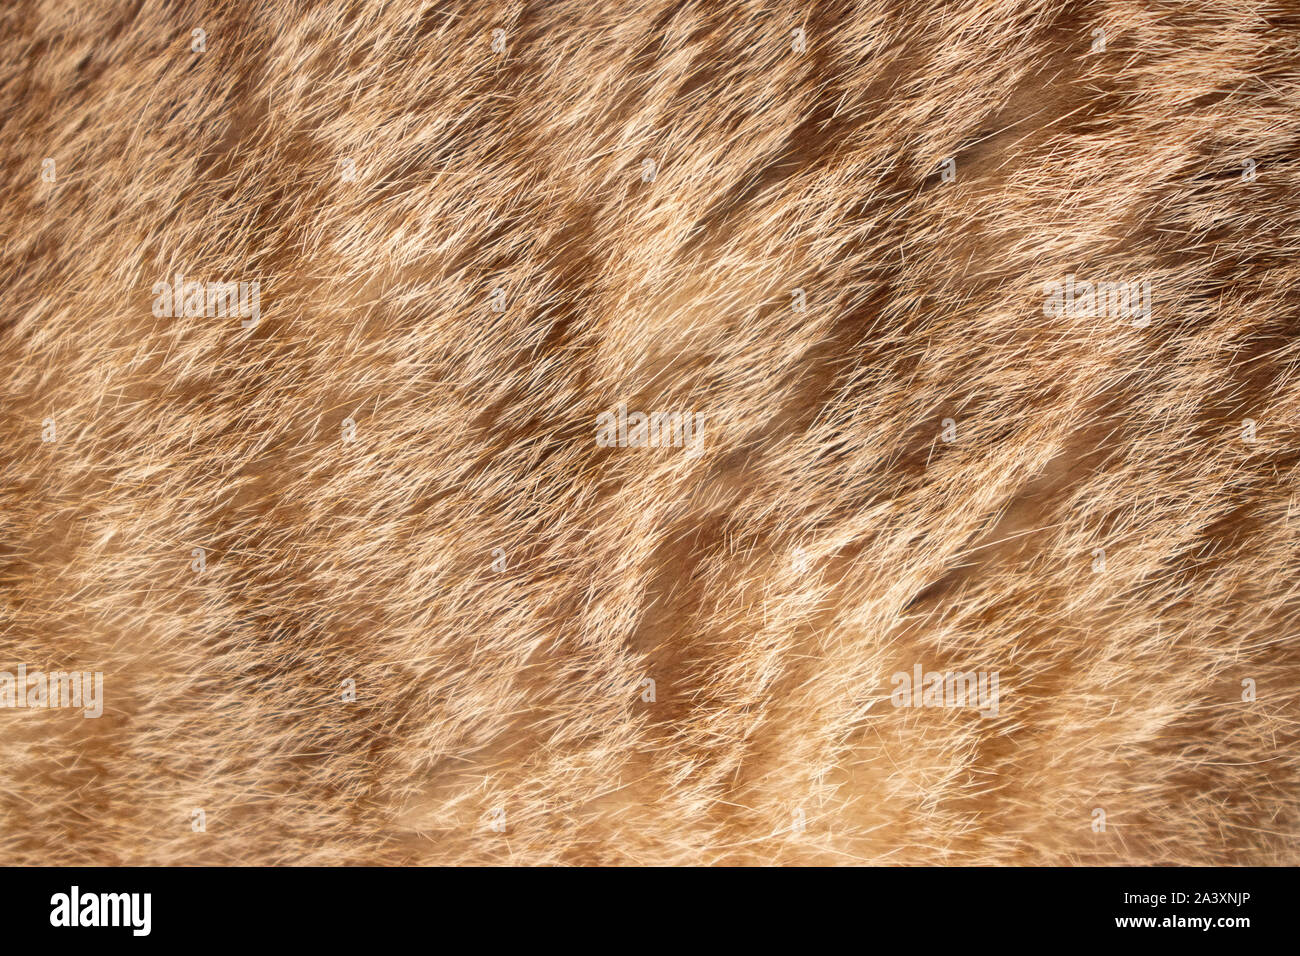 Brown cat animal fur texture closeup macro Stock Photo